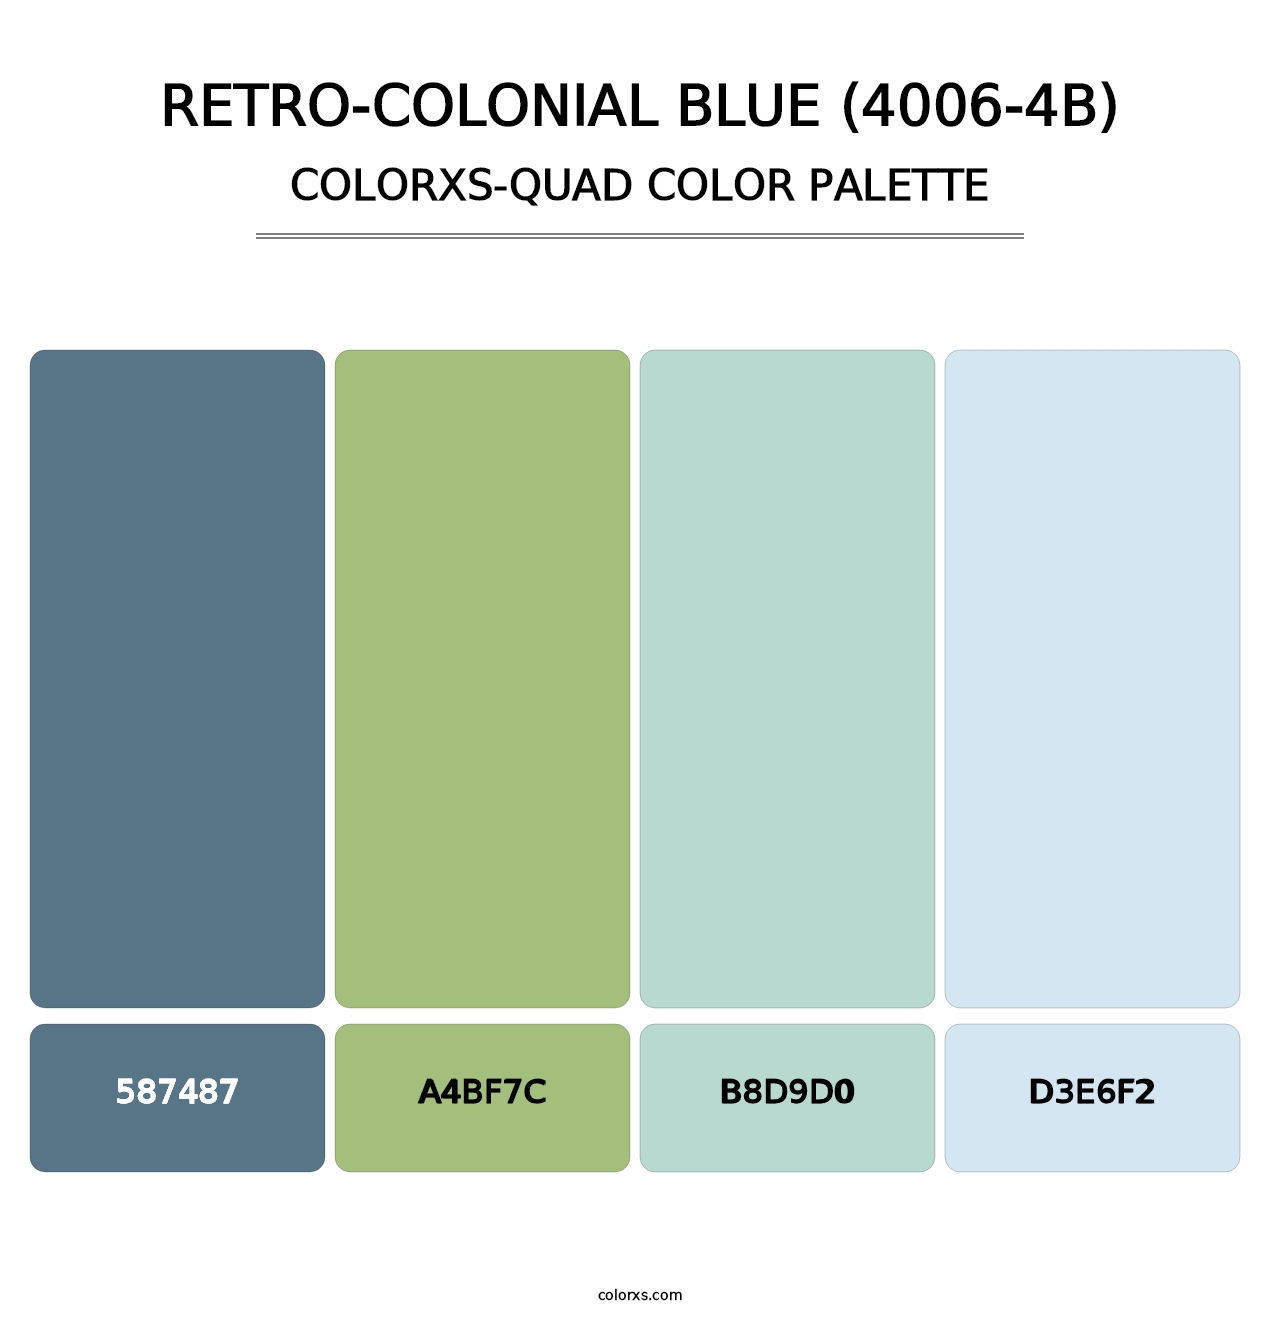 Retro-Colonial Blue (4006-4B) - Colorxs Quad Palette